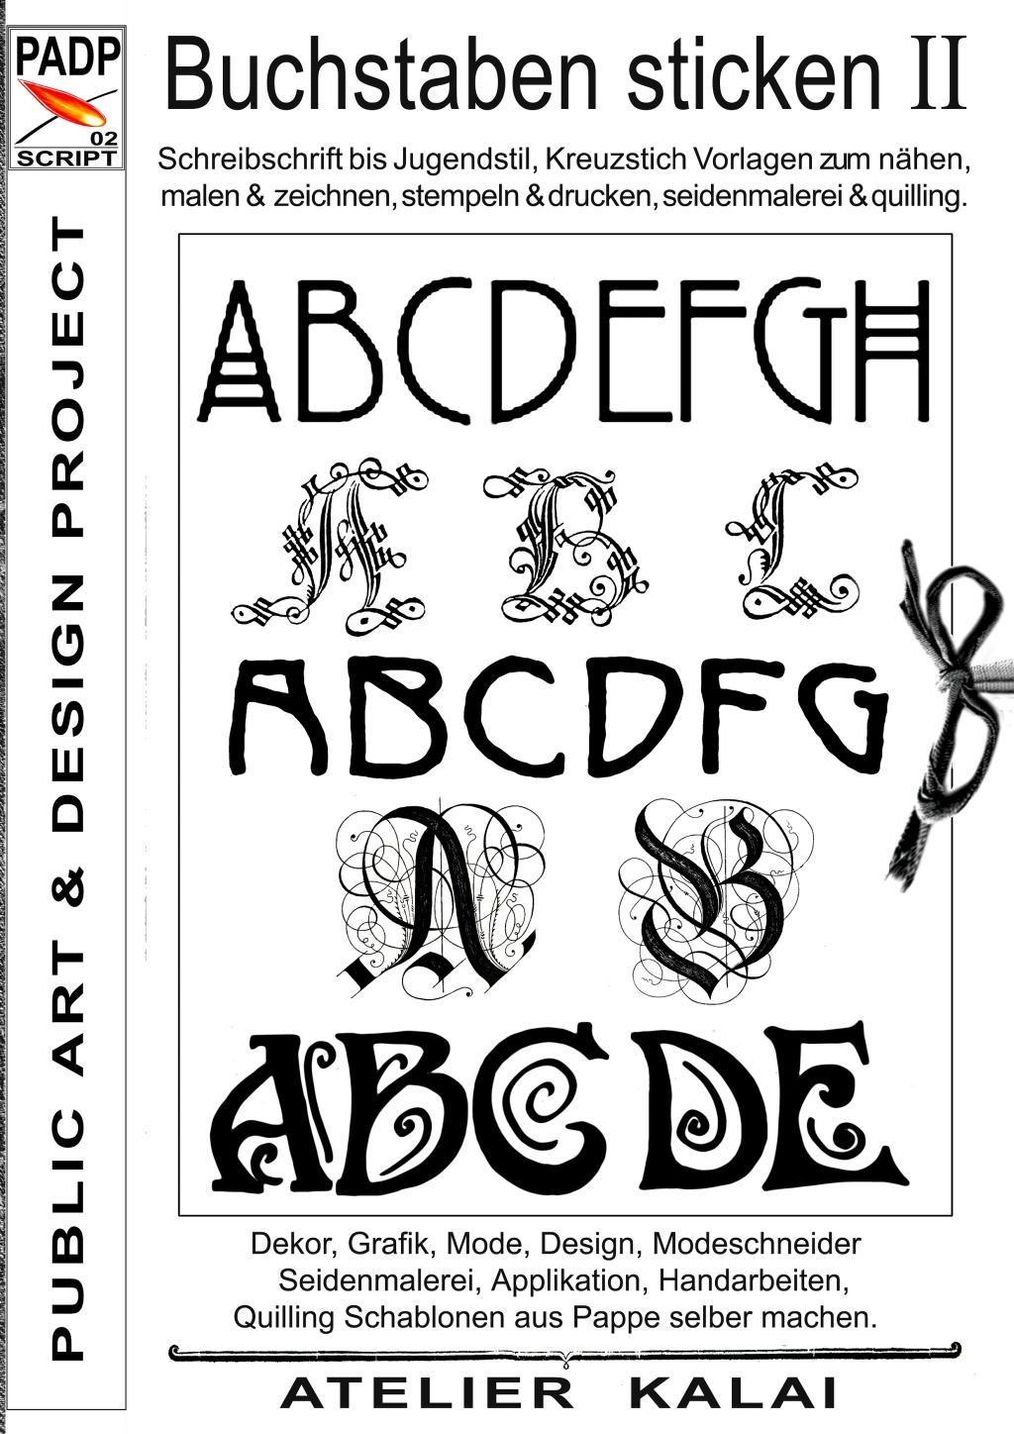 PADP-Script 002: Buchstaben sticken II eBook | Weltbild